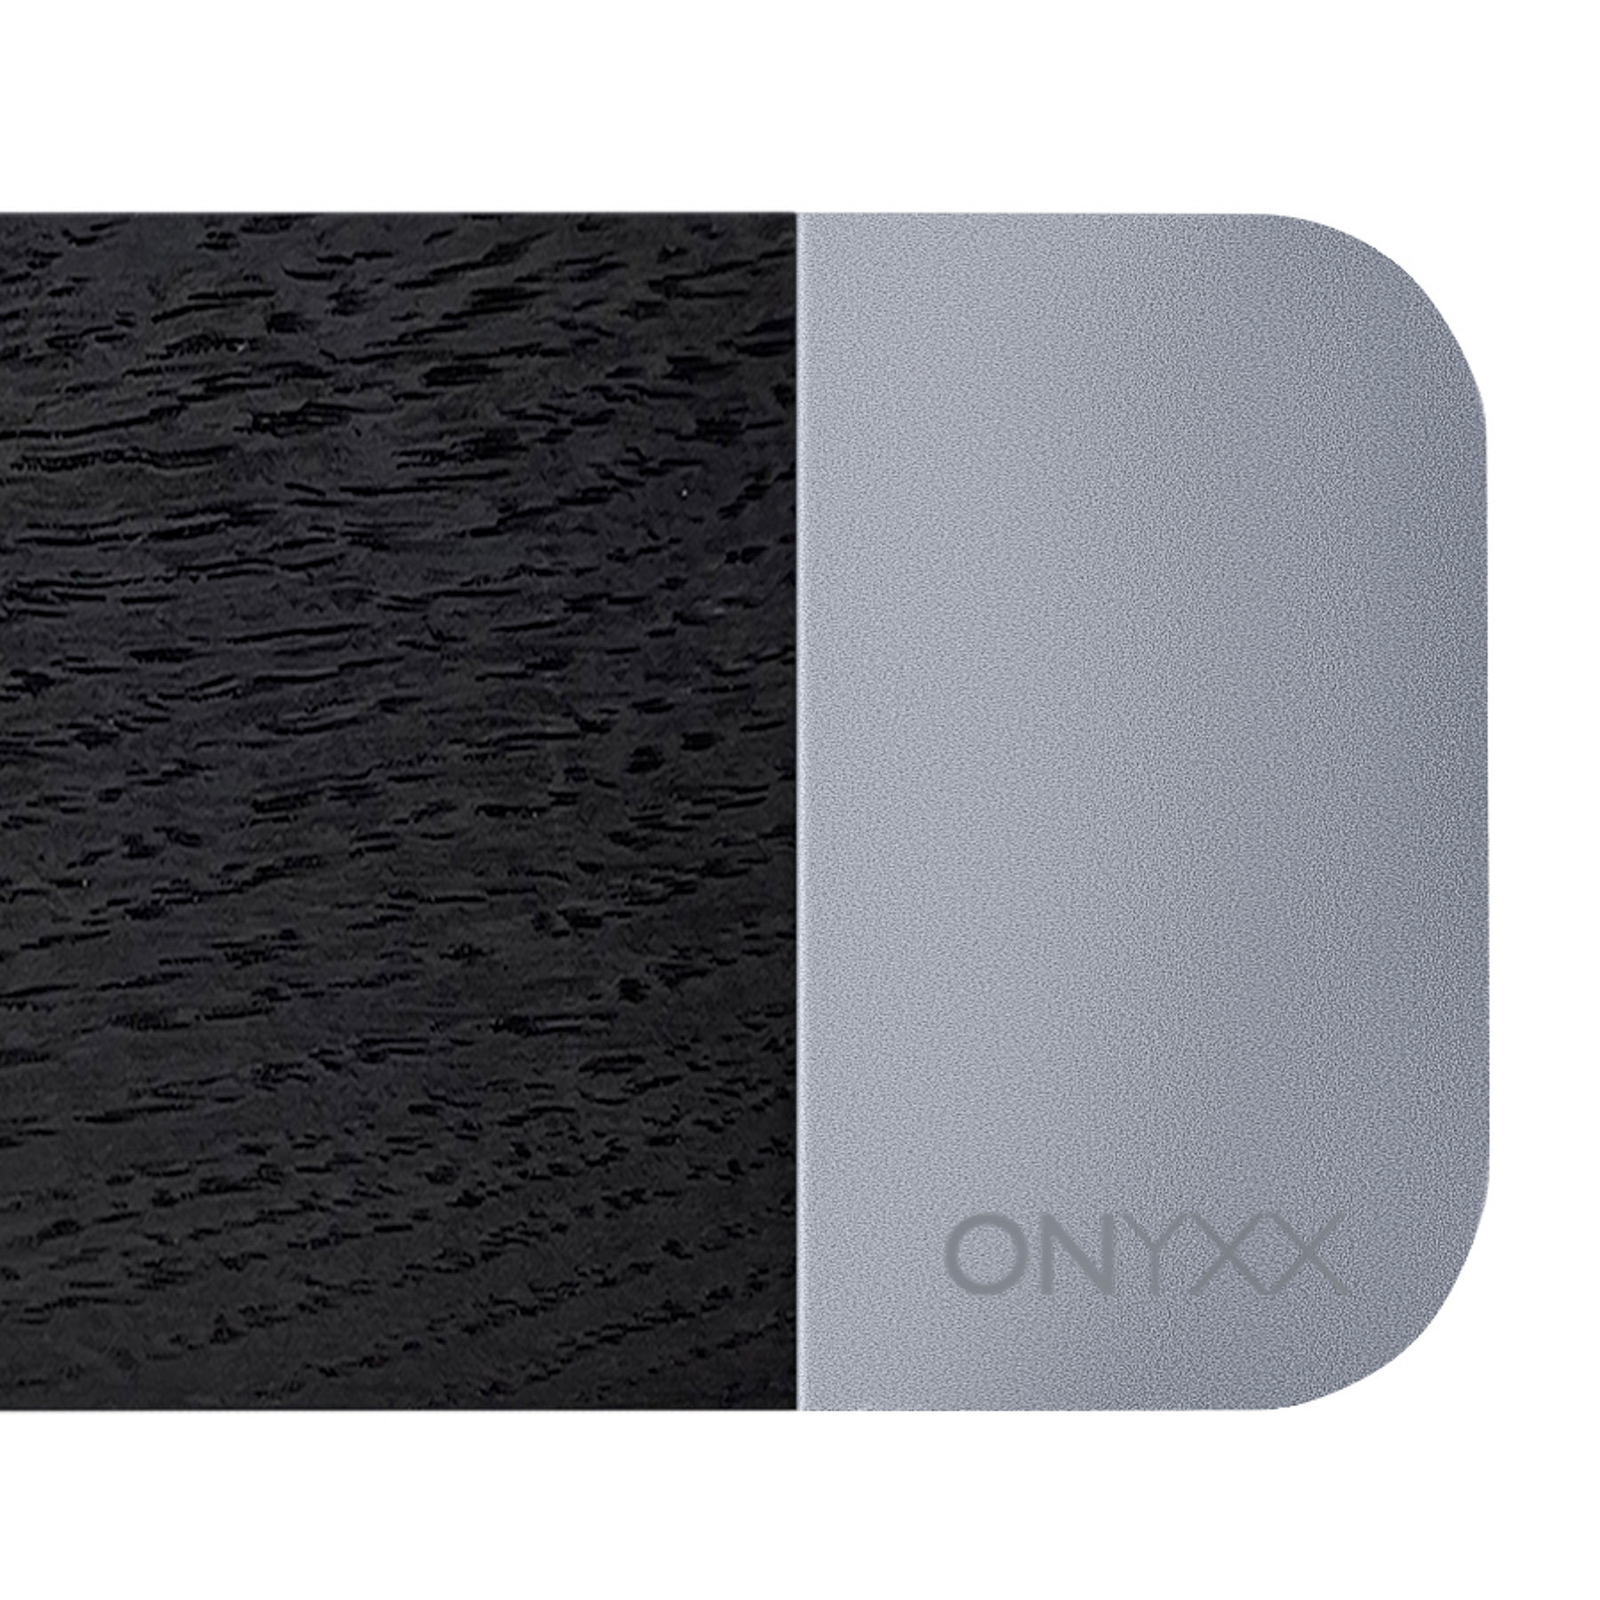 GRIMMEISEN Onyxx Linea Pro pendant bog oak/silver